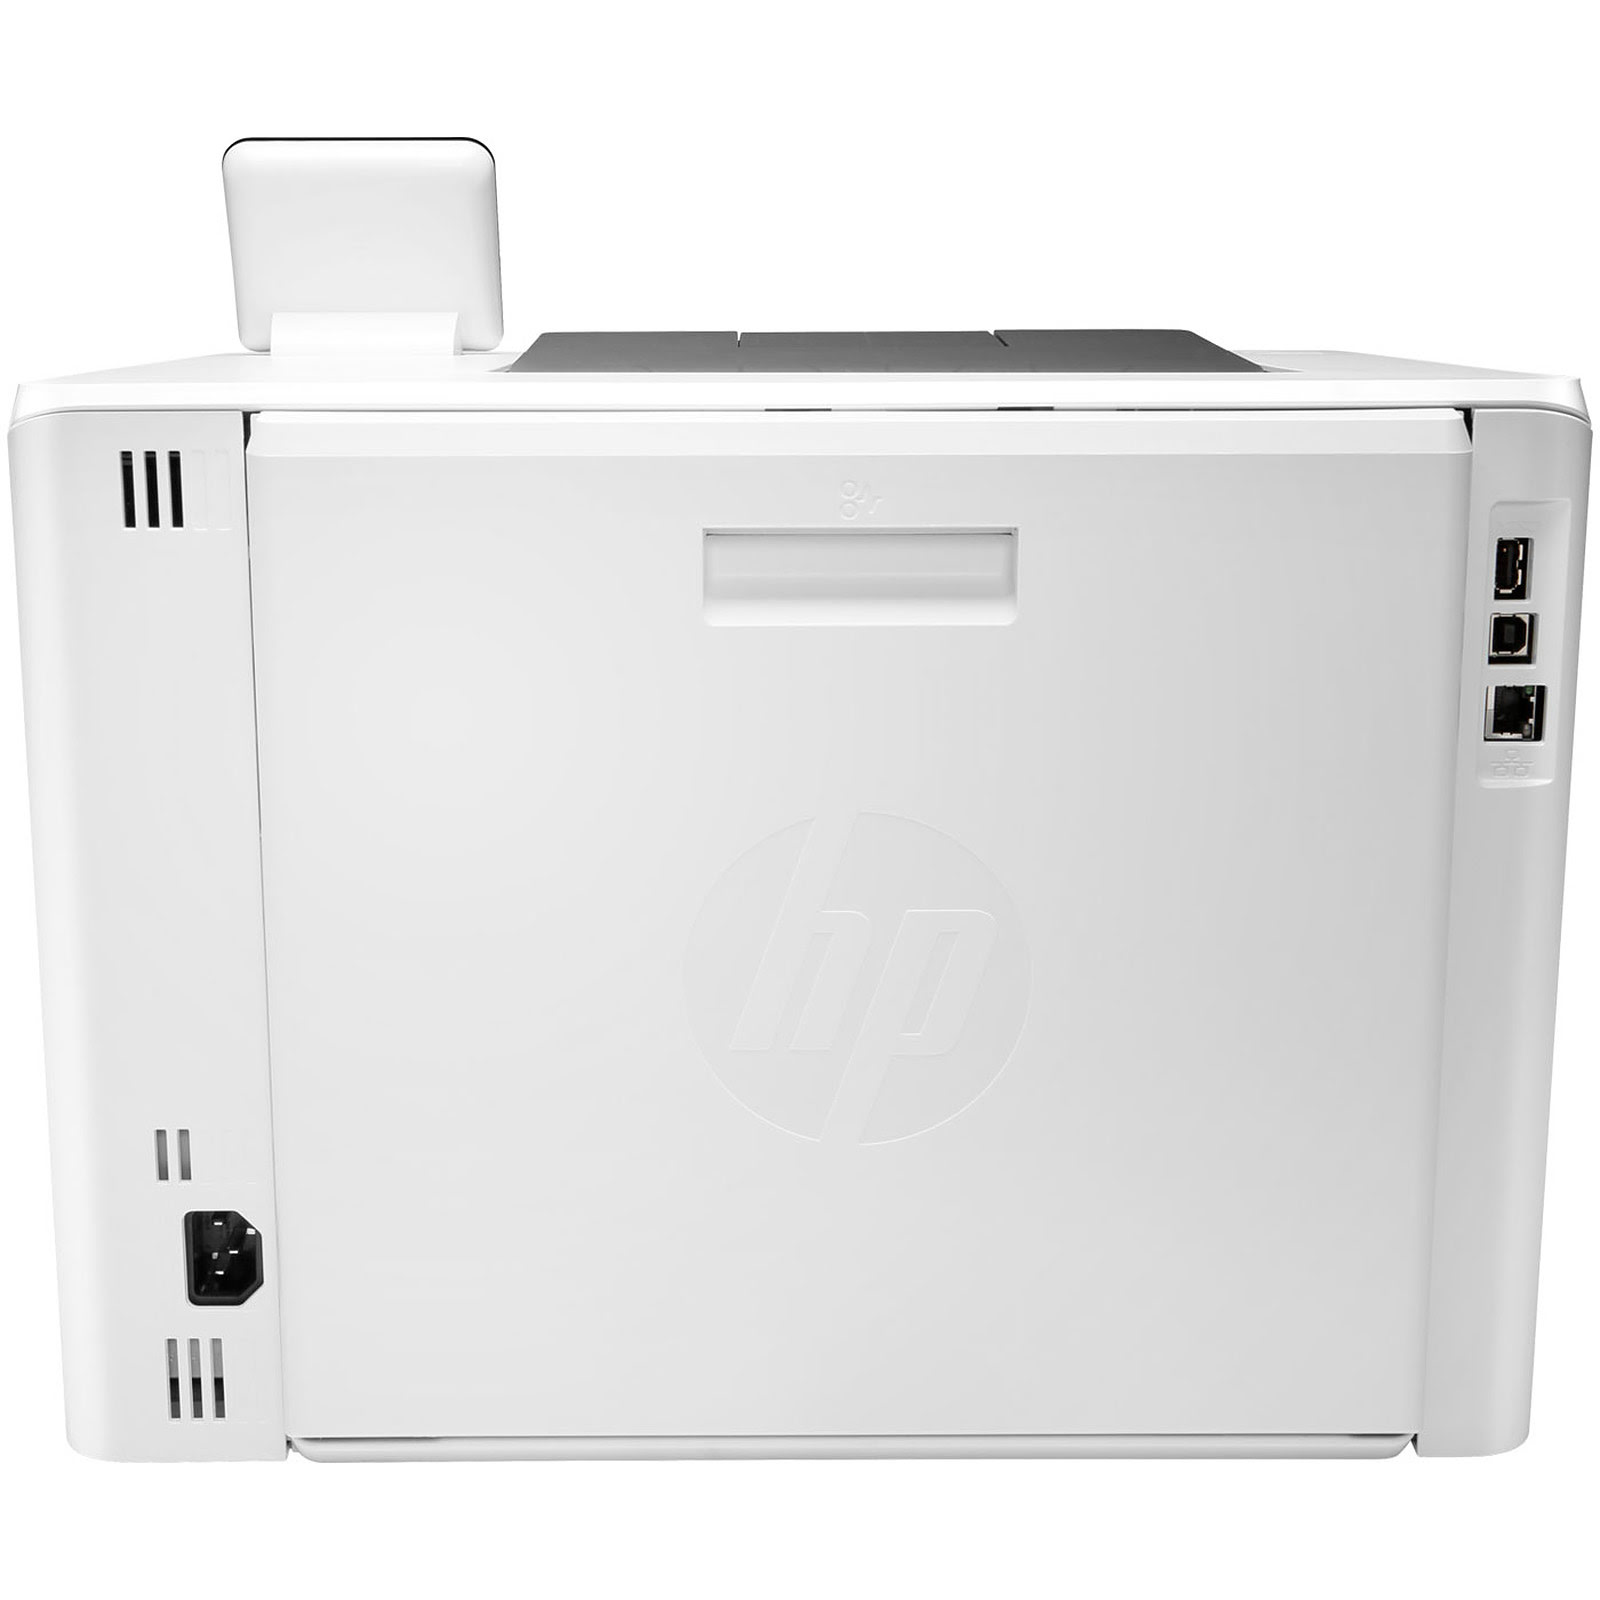 Imprimante HP LaserJet Pro M454dw - Cybertek.fr - 2